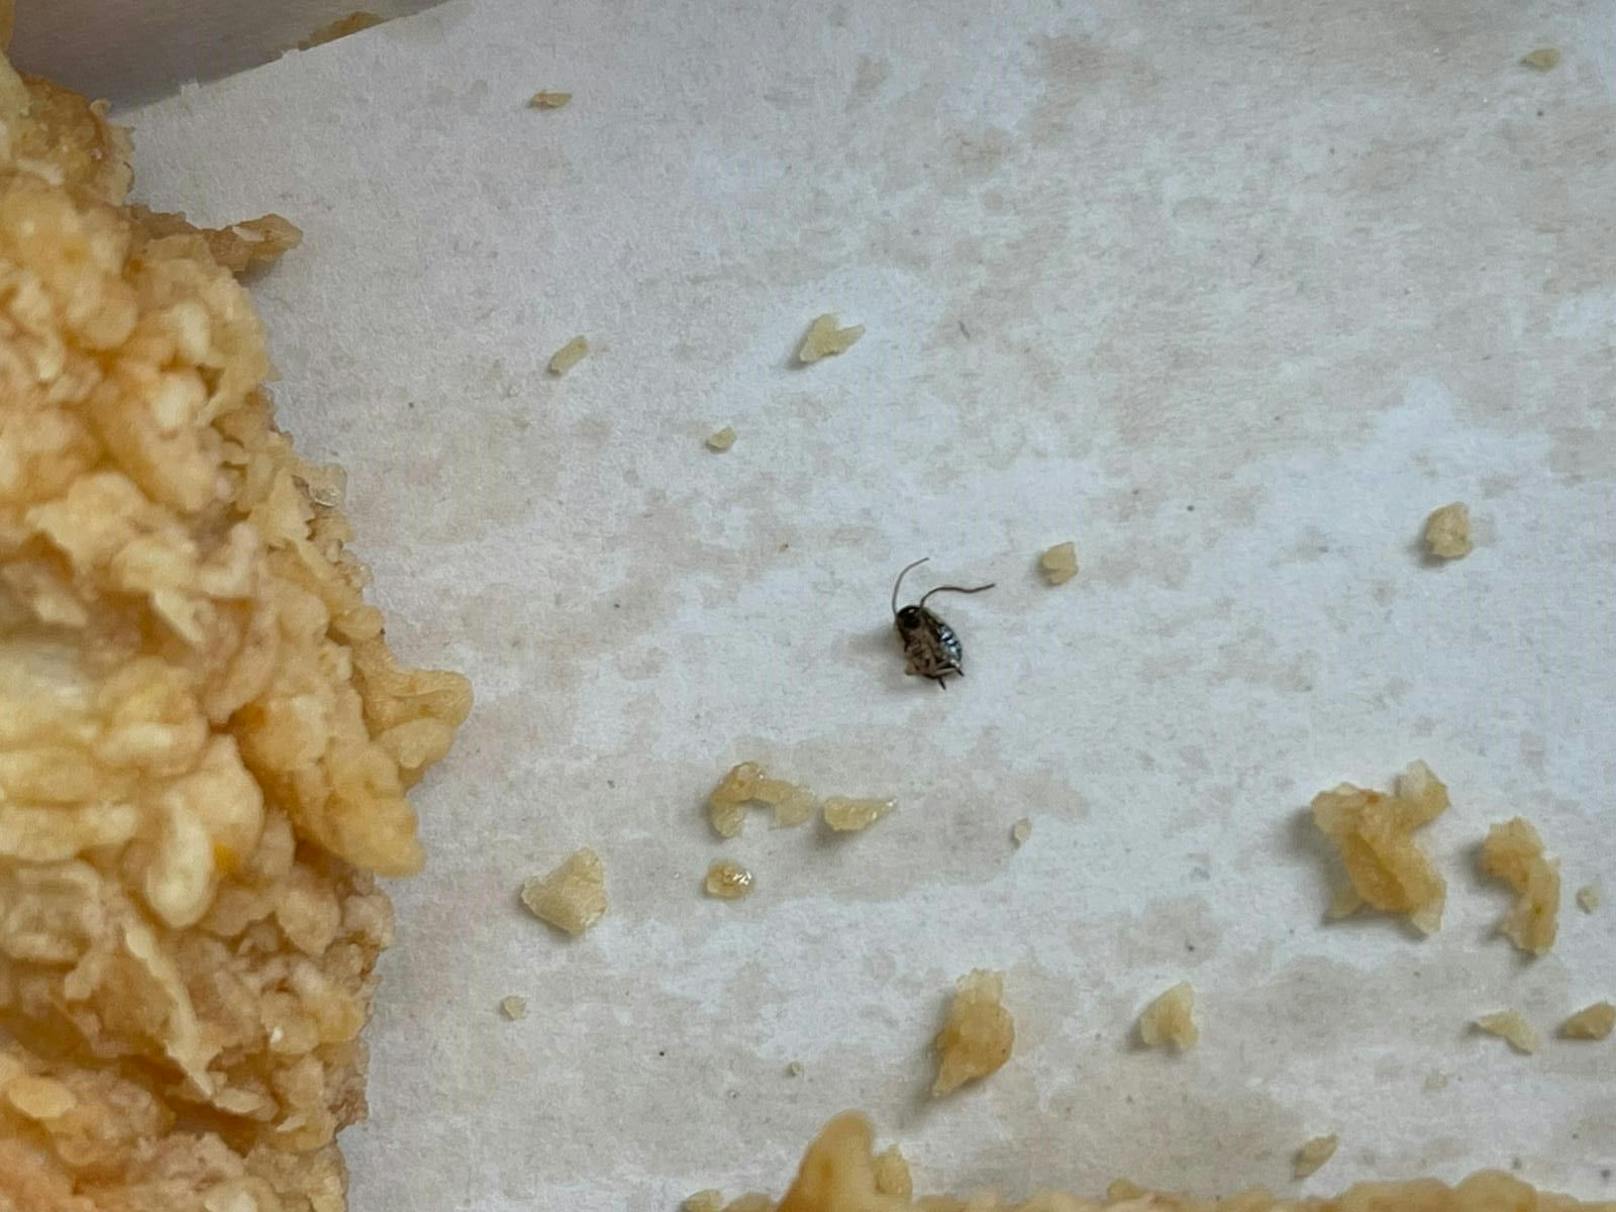 Dieses Insekt entdeckte der Leser in seinem Essen.